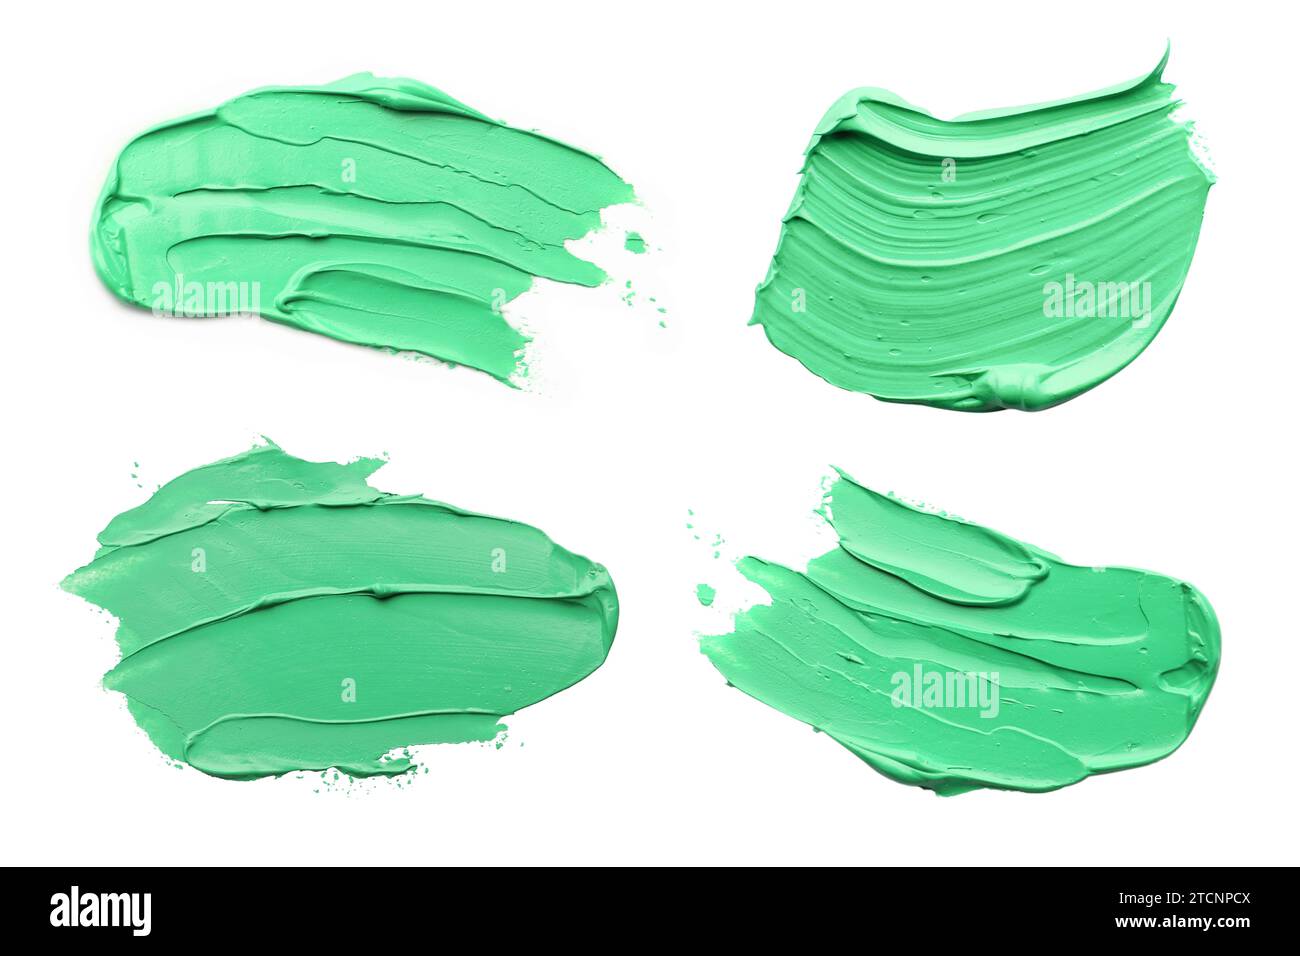 Coups de peinture à l'huile vert clair isolés sur blanc, vue de dessus Banque D'Images